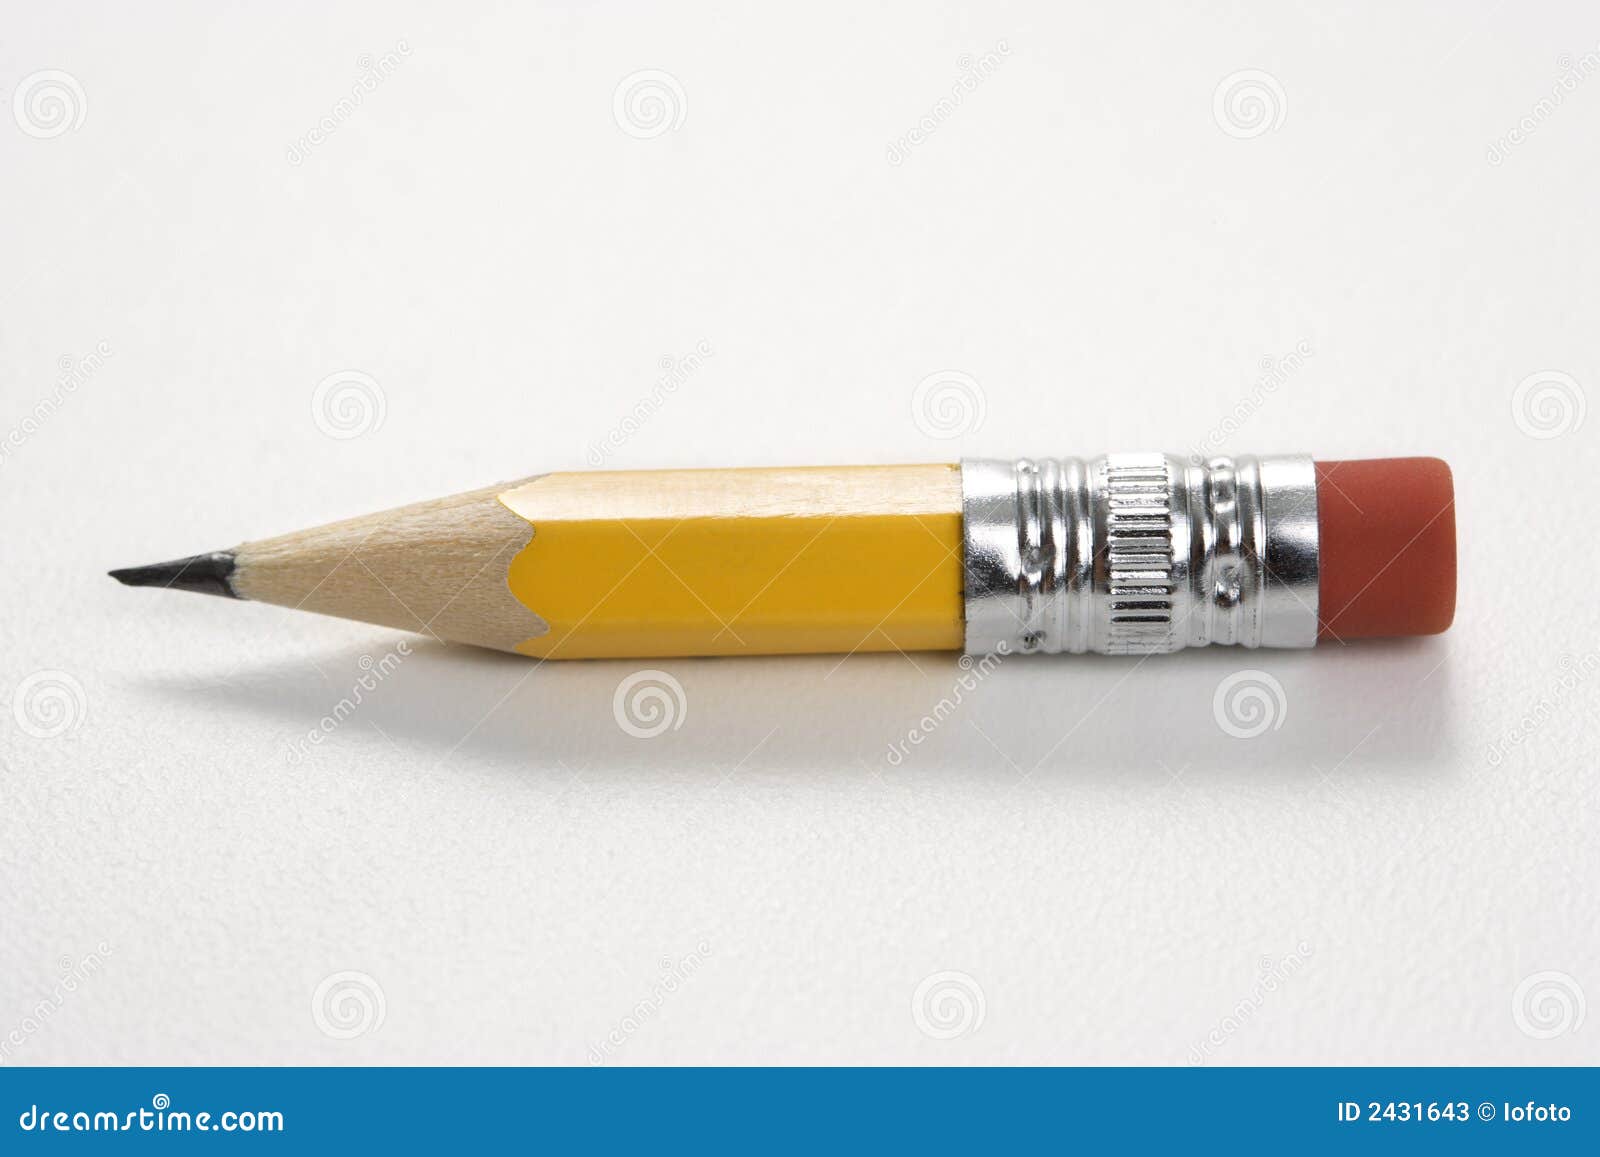 short pencil.